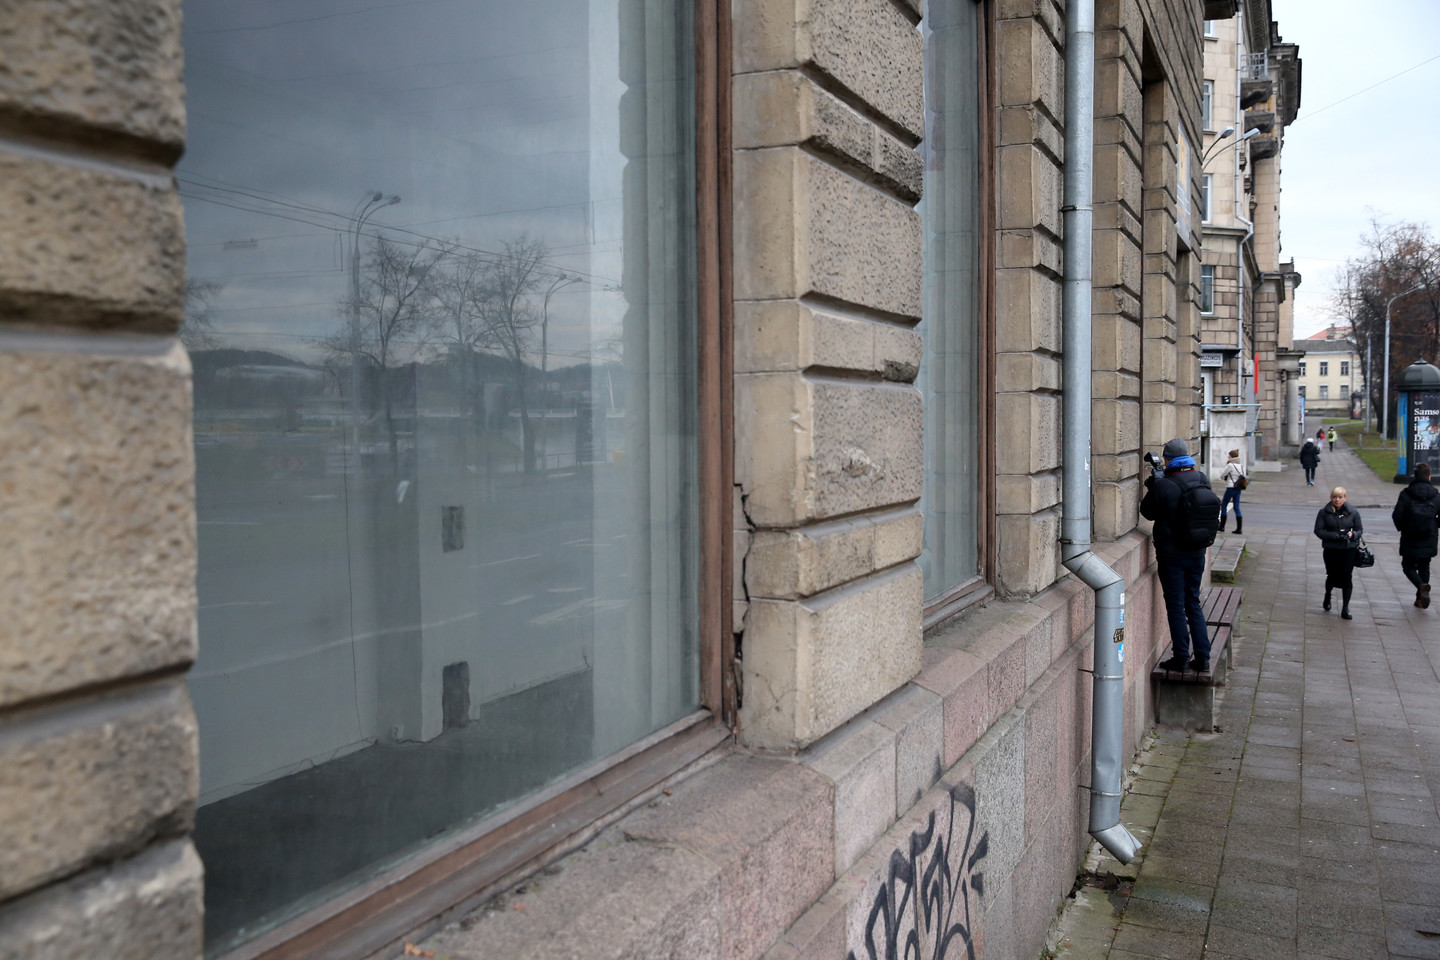 Vilniaus miesto savivaldybei nusprendęs grąžinti Goštauto gatvėje esančias studijos patalpas jas pirmadienį pridavė savivaldybės darbuotojams.<br> R.Danisevičiaus nuotr.